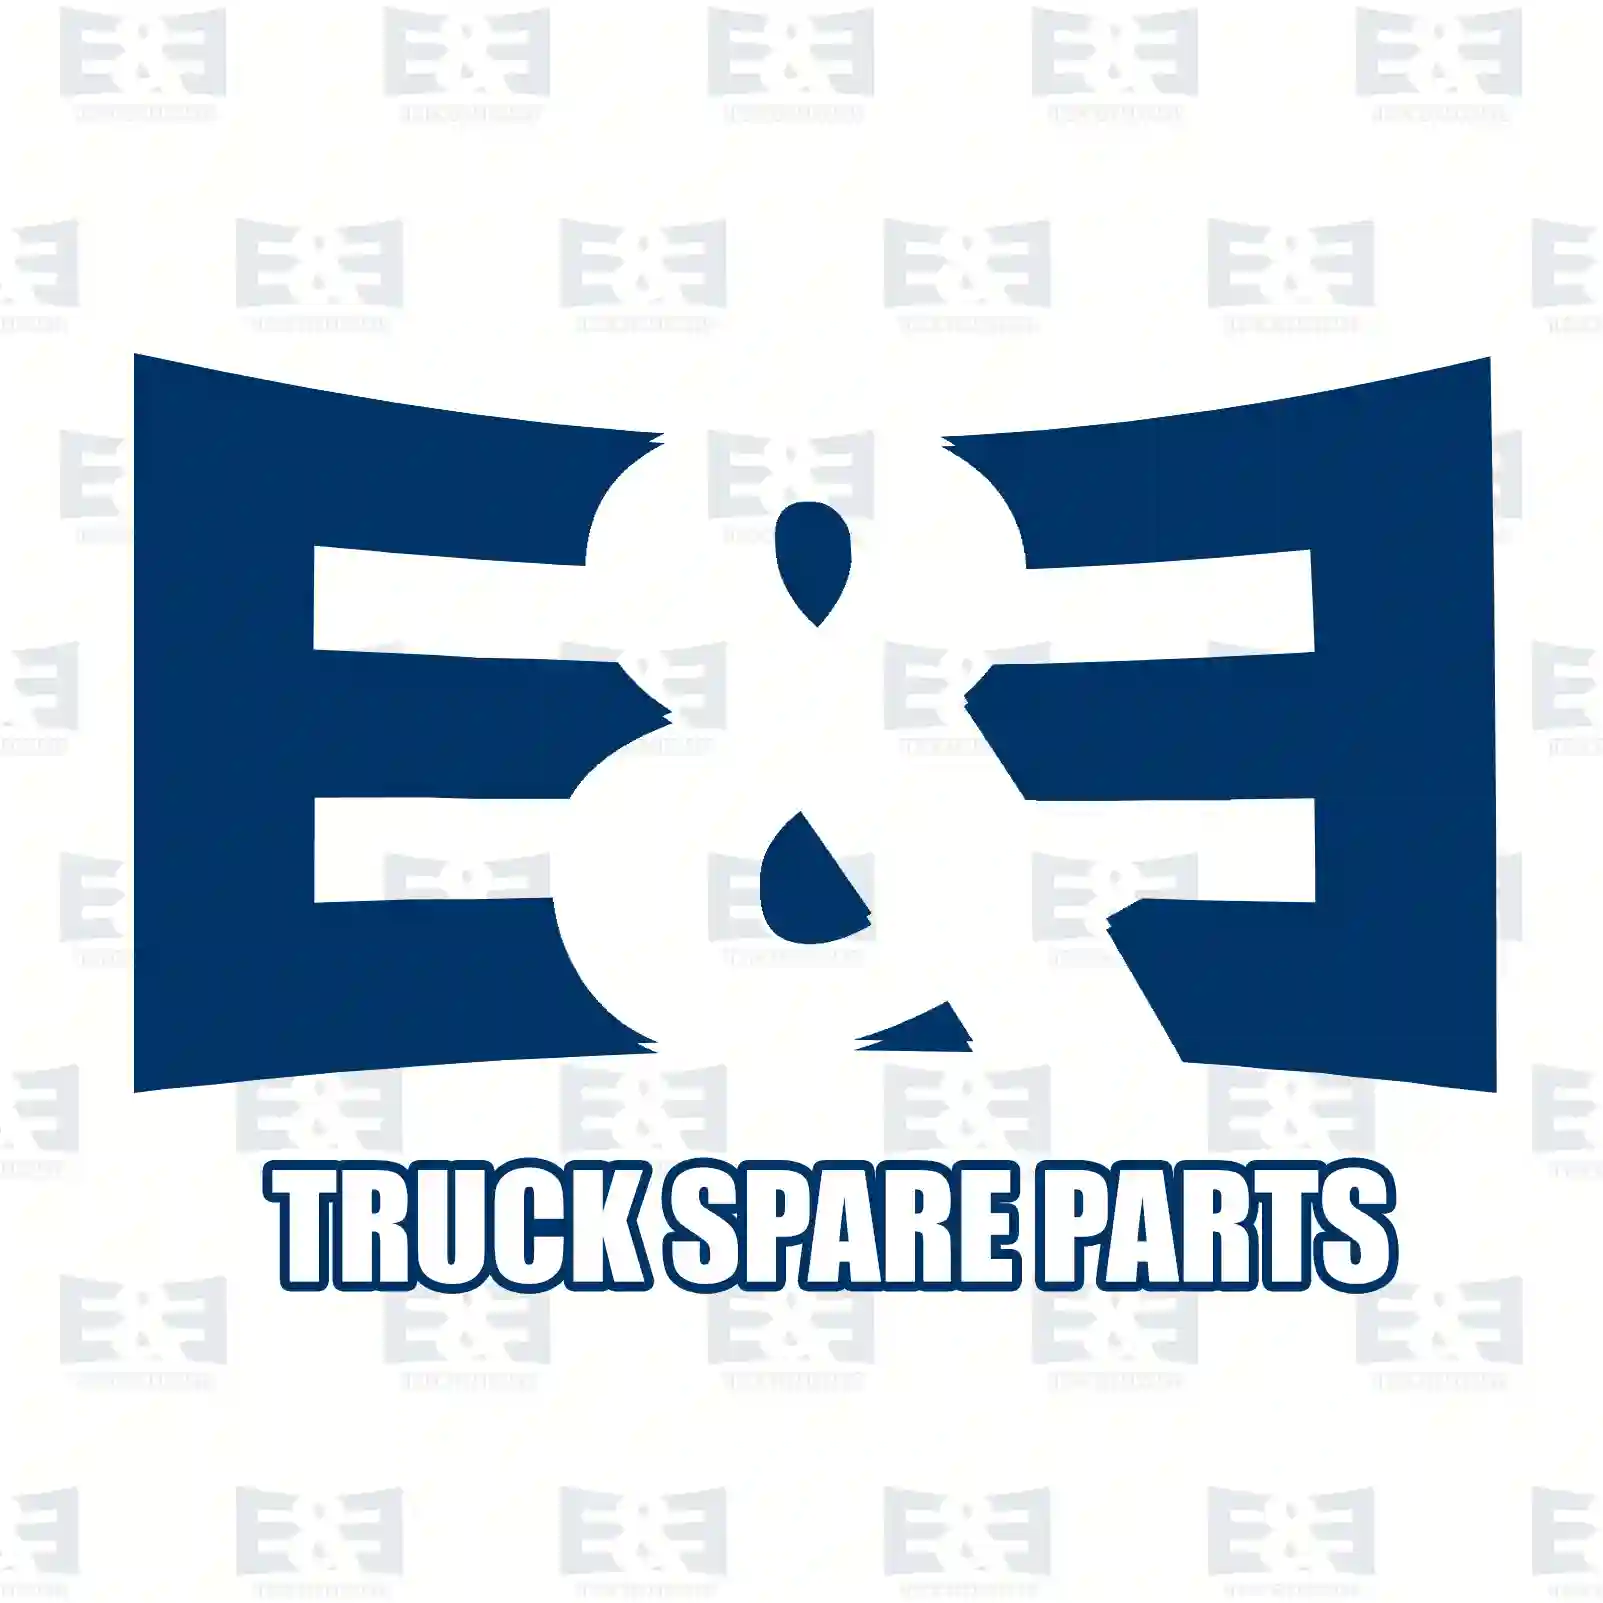 Ball joint, 2E2205053, 1047145, 6517364, 6687191, 92VB-3289-AA, 92VX-3270-AA, 97VX-3270-AA ||  2E2205053 E&E Truck Spare Parts | Truck Spare Parts, Auotomotive Spare Parts Ball joint, 2E2205053, 1047145, 6517364, 6687191, 92VB-3289-AA, 92VX-3270-AA, 97VX-3270-AA ||  2E2205053 E&E Truck Spare Parts | Truck Spare Parts, Auotomotive Spare Parts